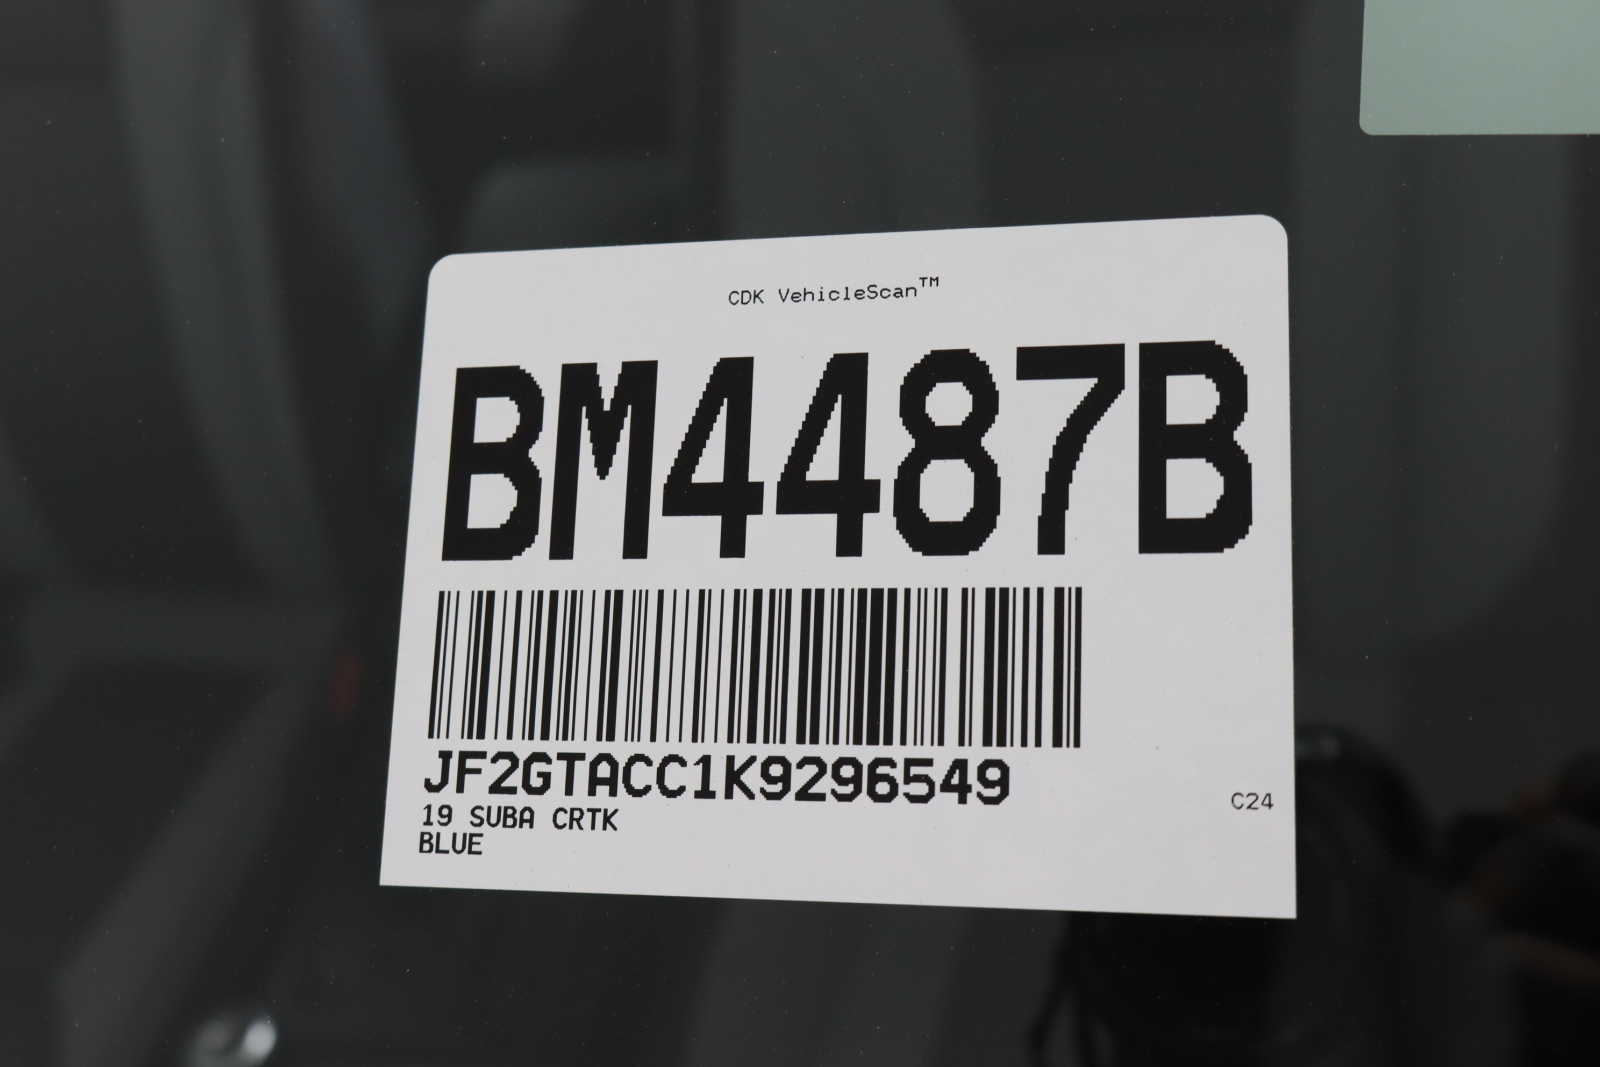 used 2019 Subaru Crosstrek car, priced at $21,598